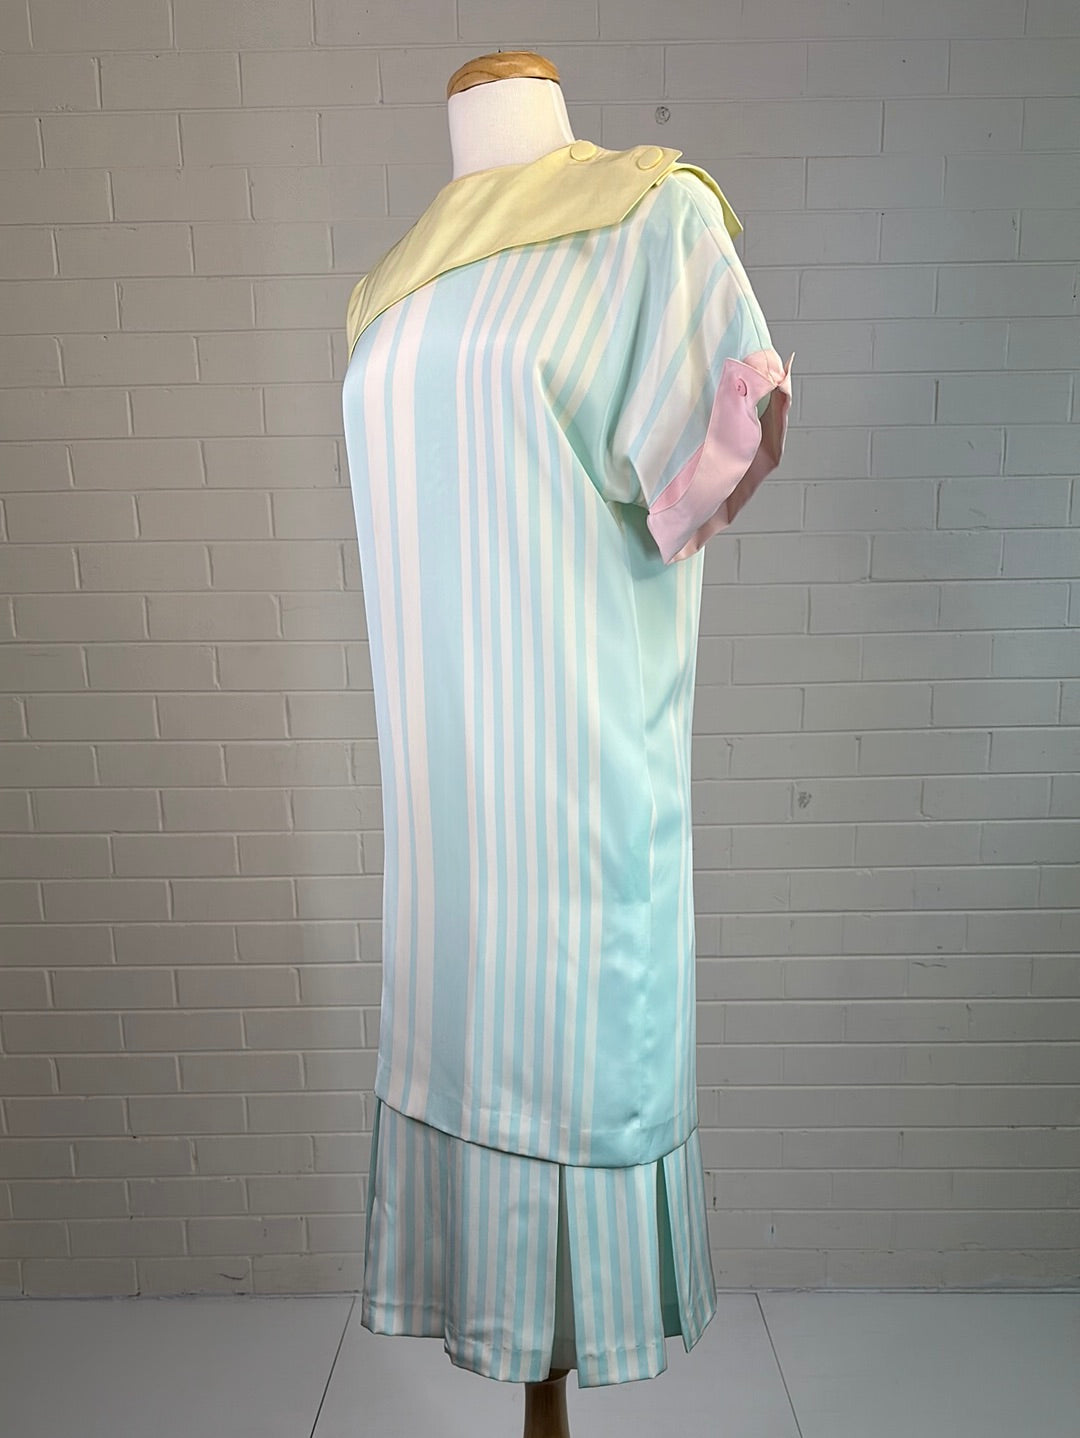 Louis Féraud | Paris | vintage 80's | skirt & top set | size 8 | knee length